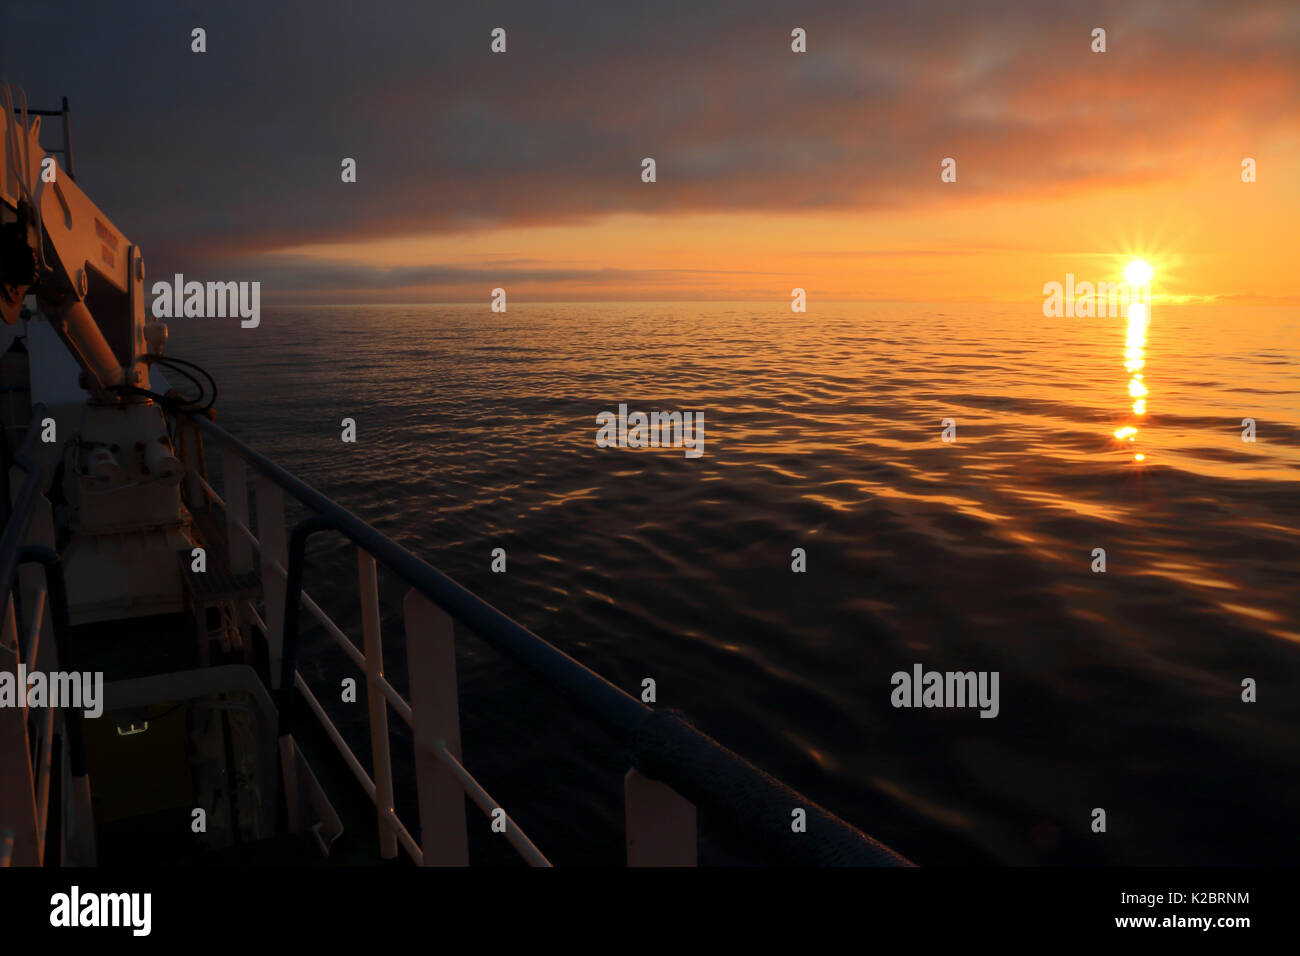 Vue depuis un bateau de pêche de soleil sur la mer du Nord, septembre 2014. Tous les non-usages de rédaction doivent être effacés individuellement. Banque D'Images